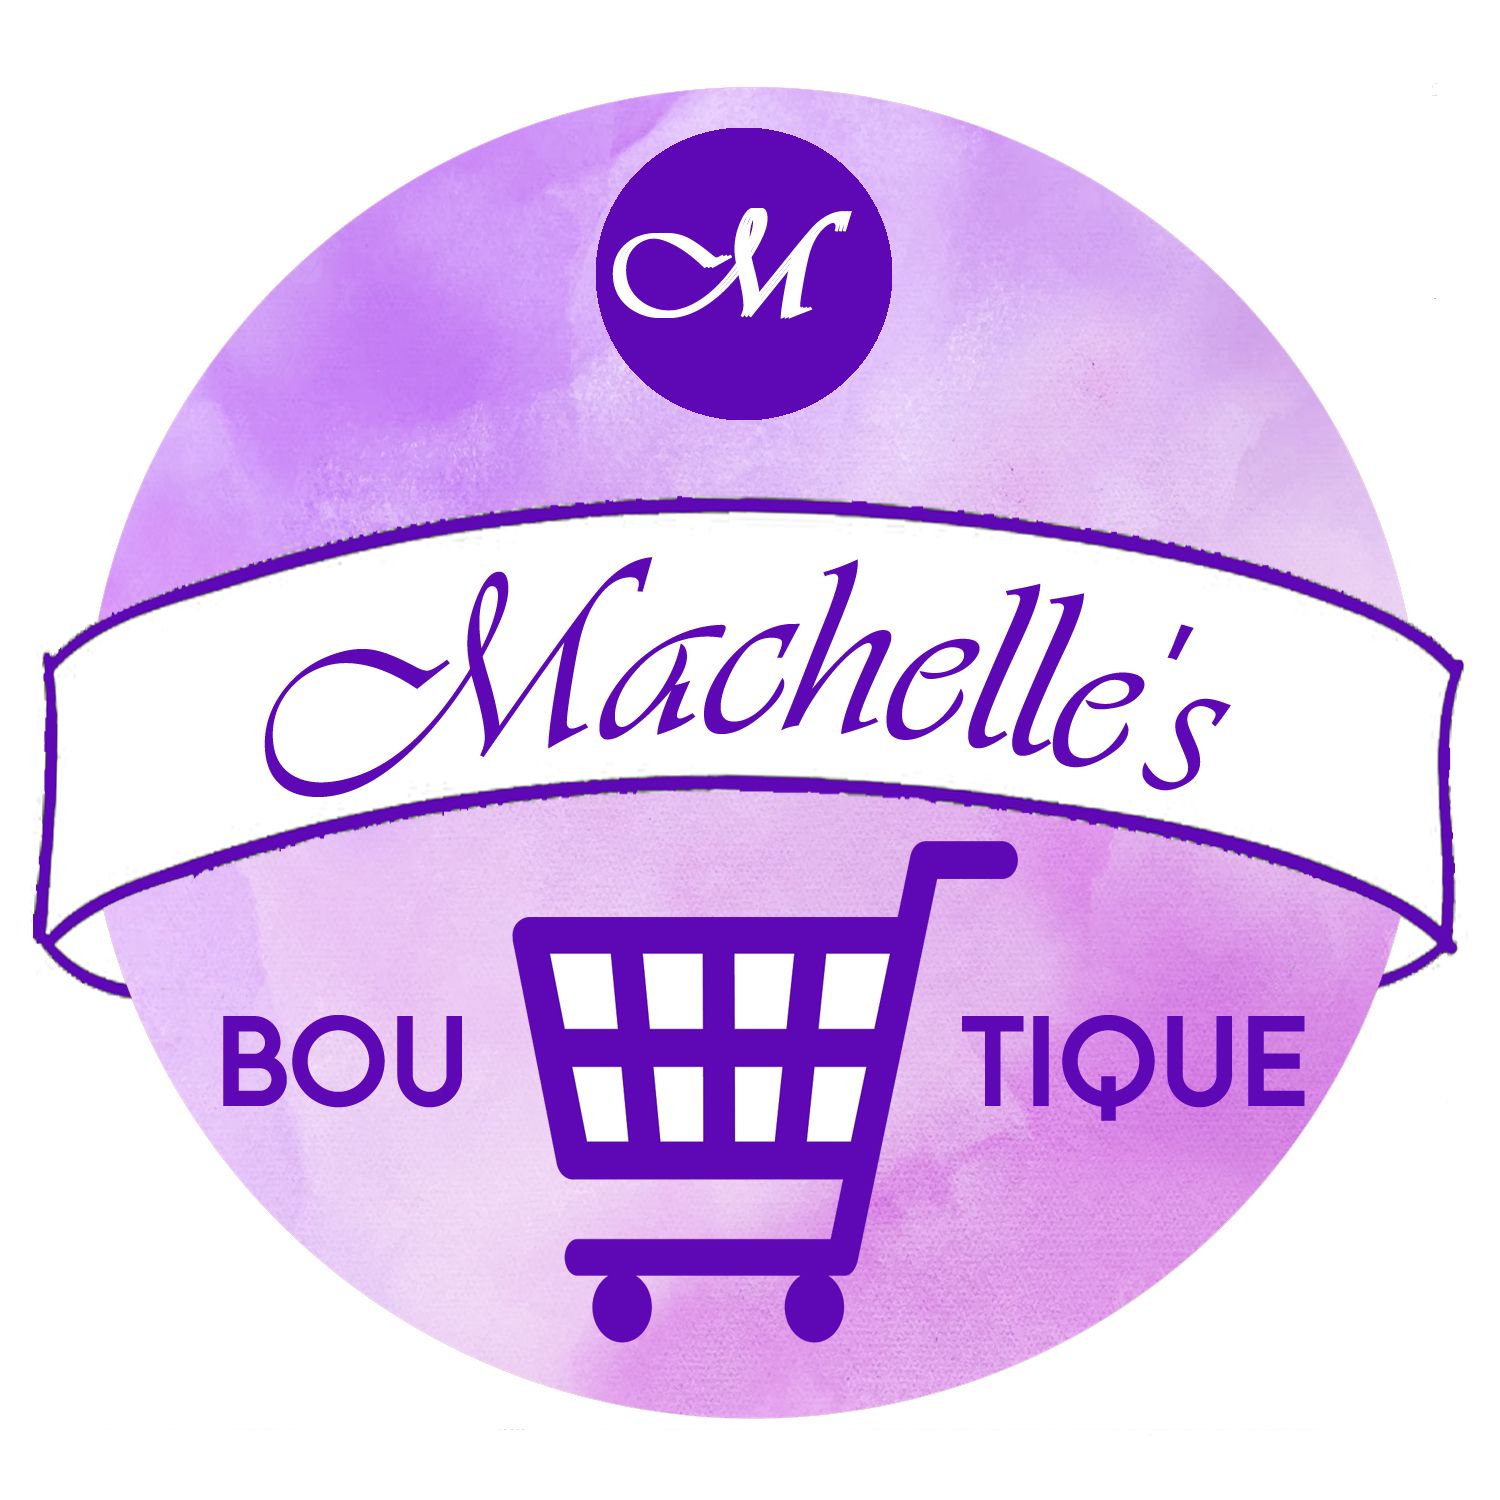 Shop online with Machelle's Boutique now! Visit Machelle's Boutique on ...